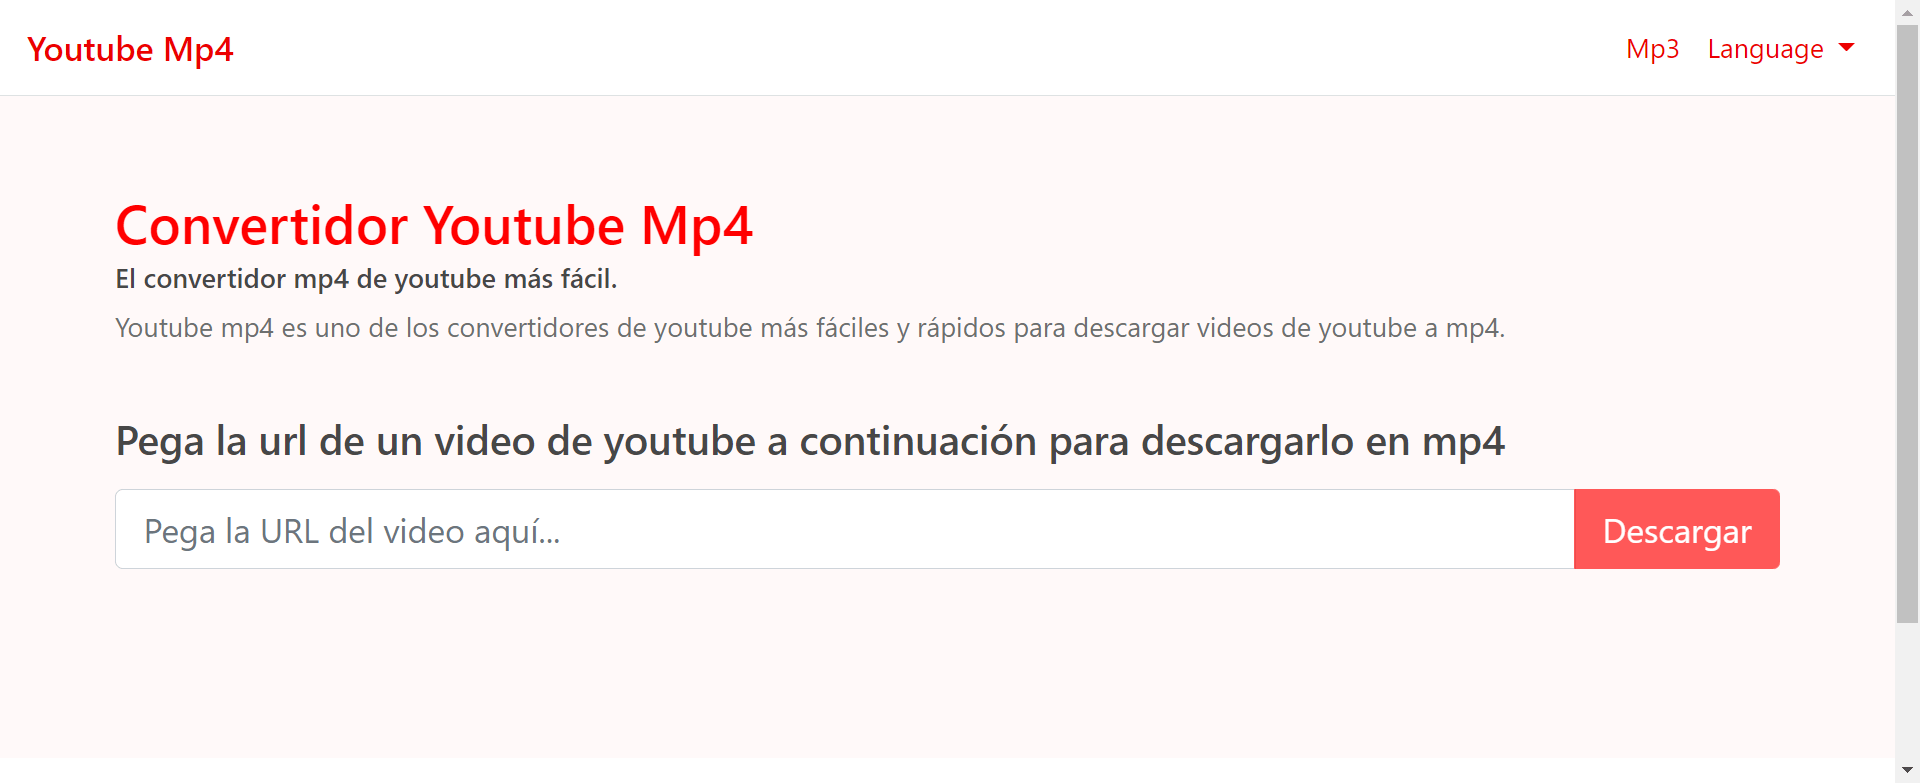 Encadenar Accidentalmente servidor Descargar Videos de YouTube Online MP4 - Convertidor MP4